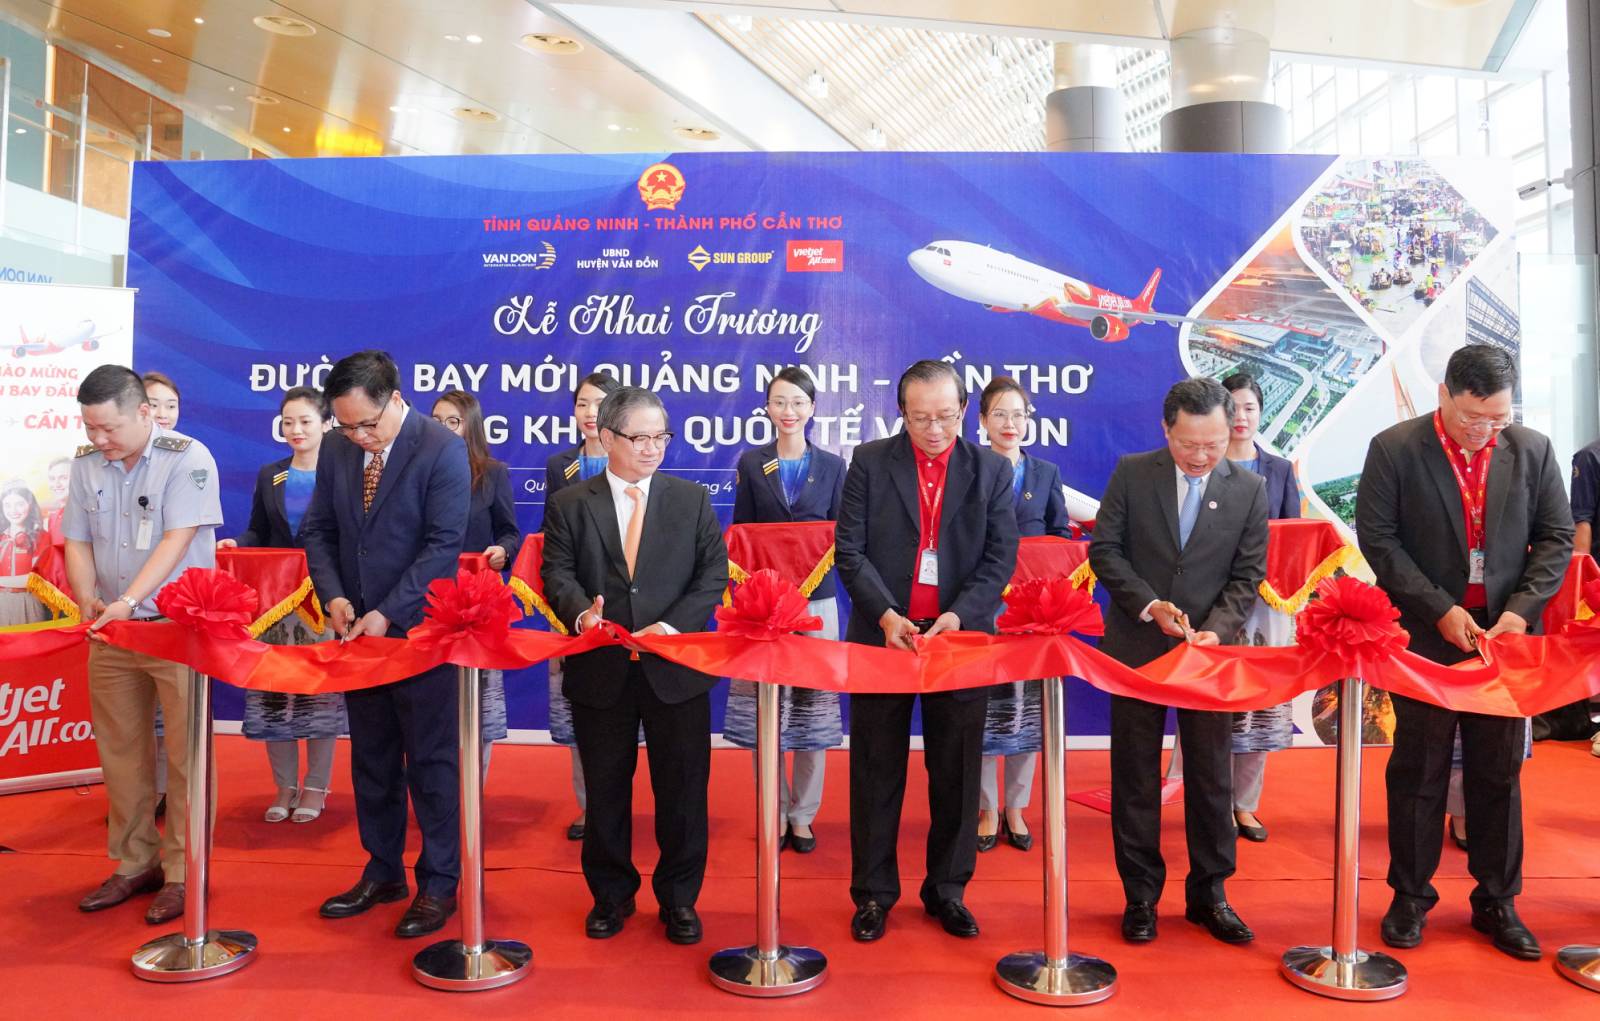 Kinh tế - Vietjet chính thức khai trương đường bay thẳng đầu tiên giữa Cần Thơ và Vân Đồn